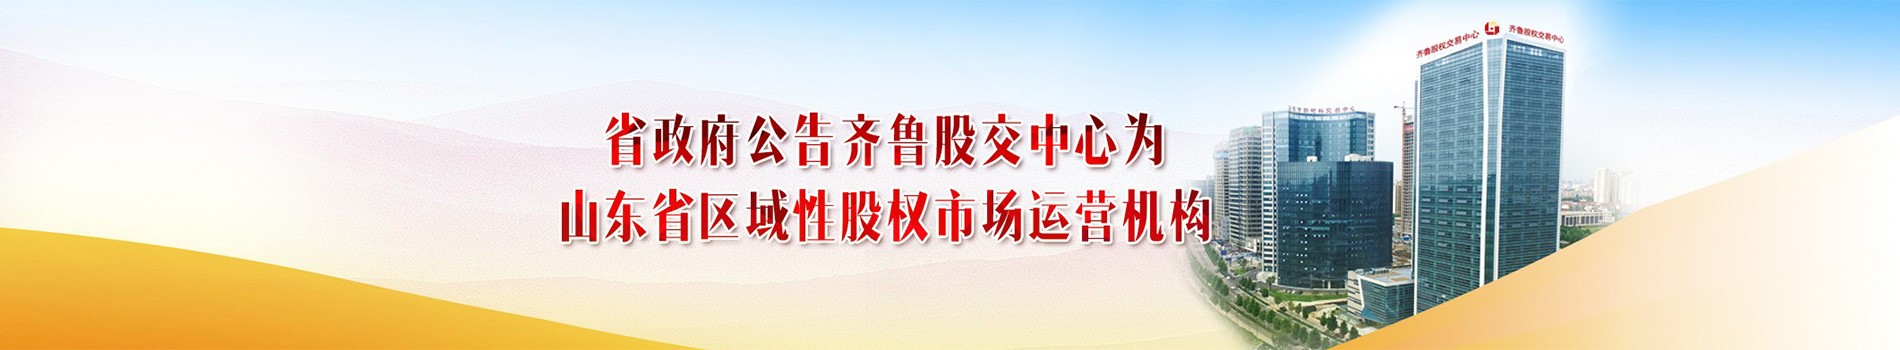 省政府公告齐鲁股交中心为山东省区域性股权市场运营机构